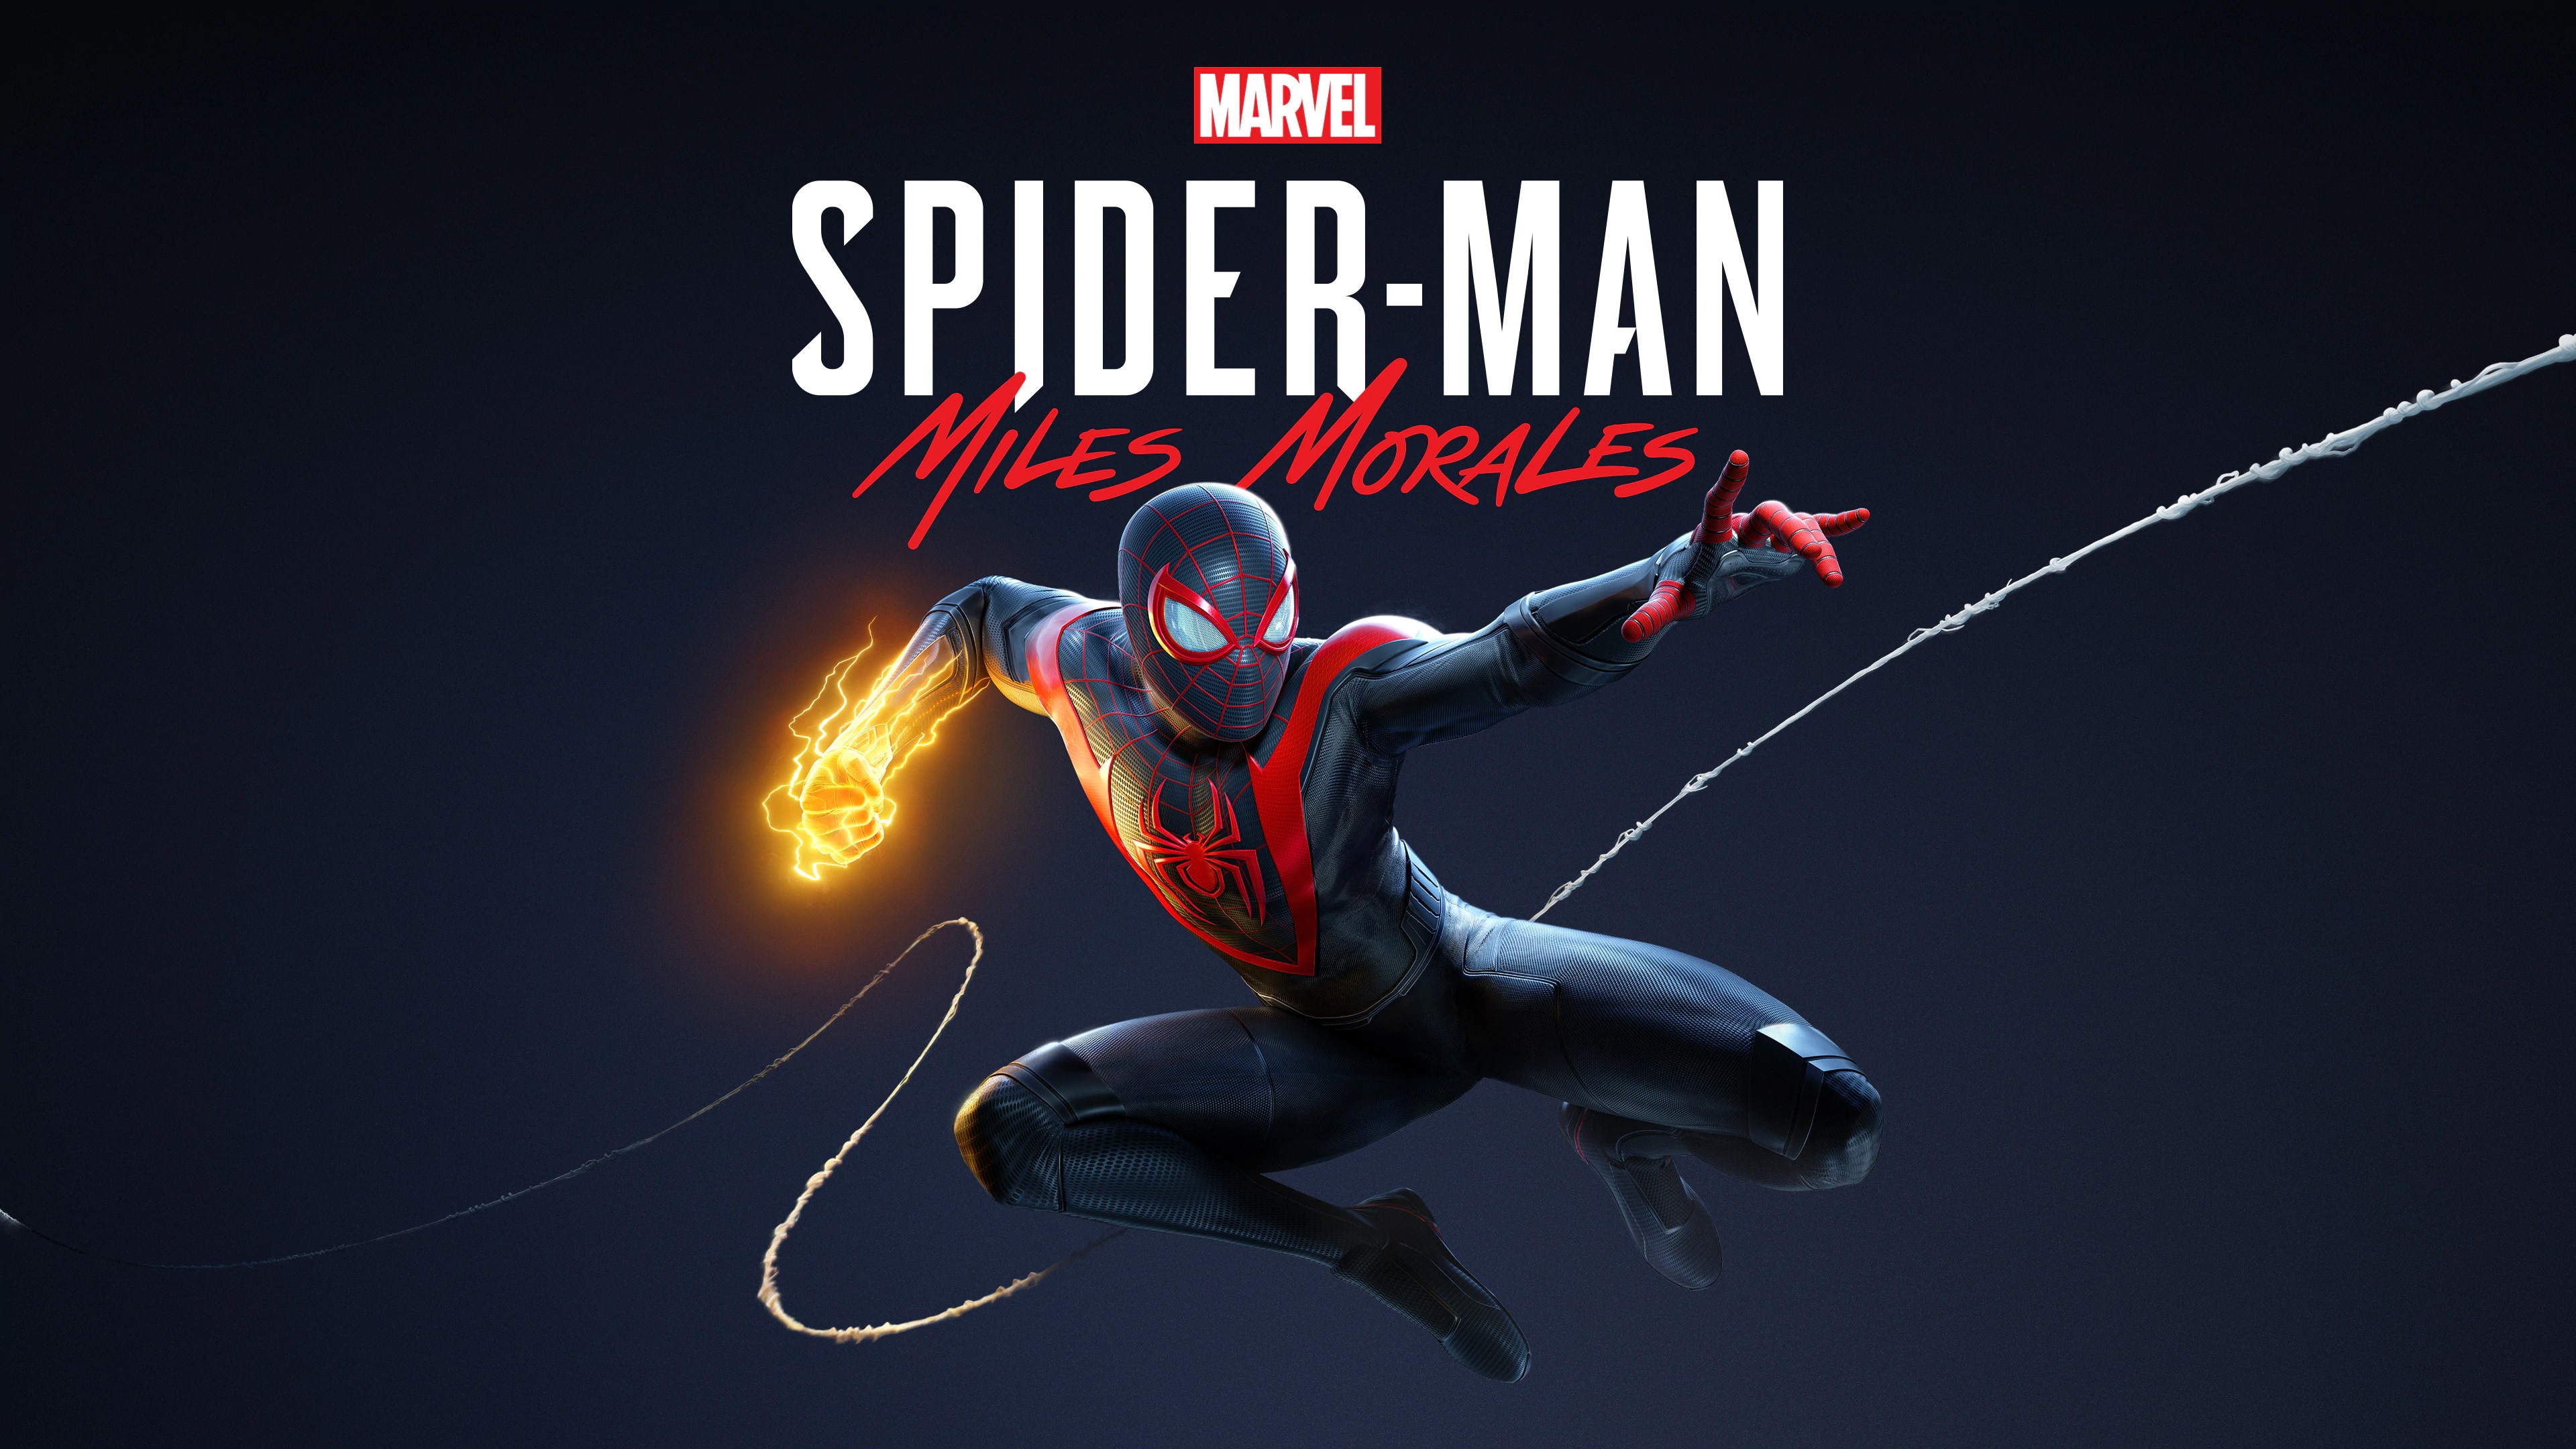 Marvel's Человек-паук /// Spider-Man: Miles Morales ( прохождение 19 )